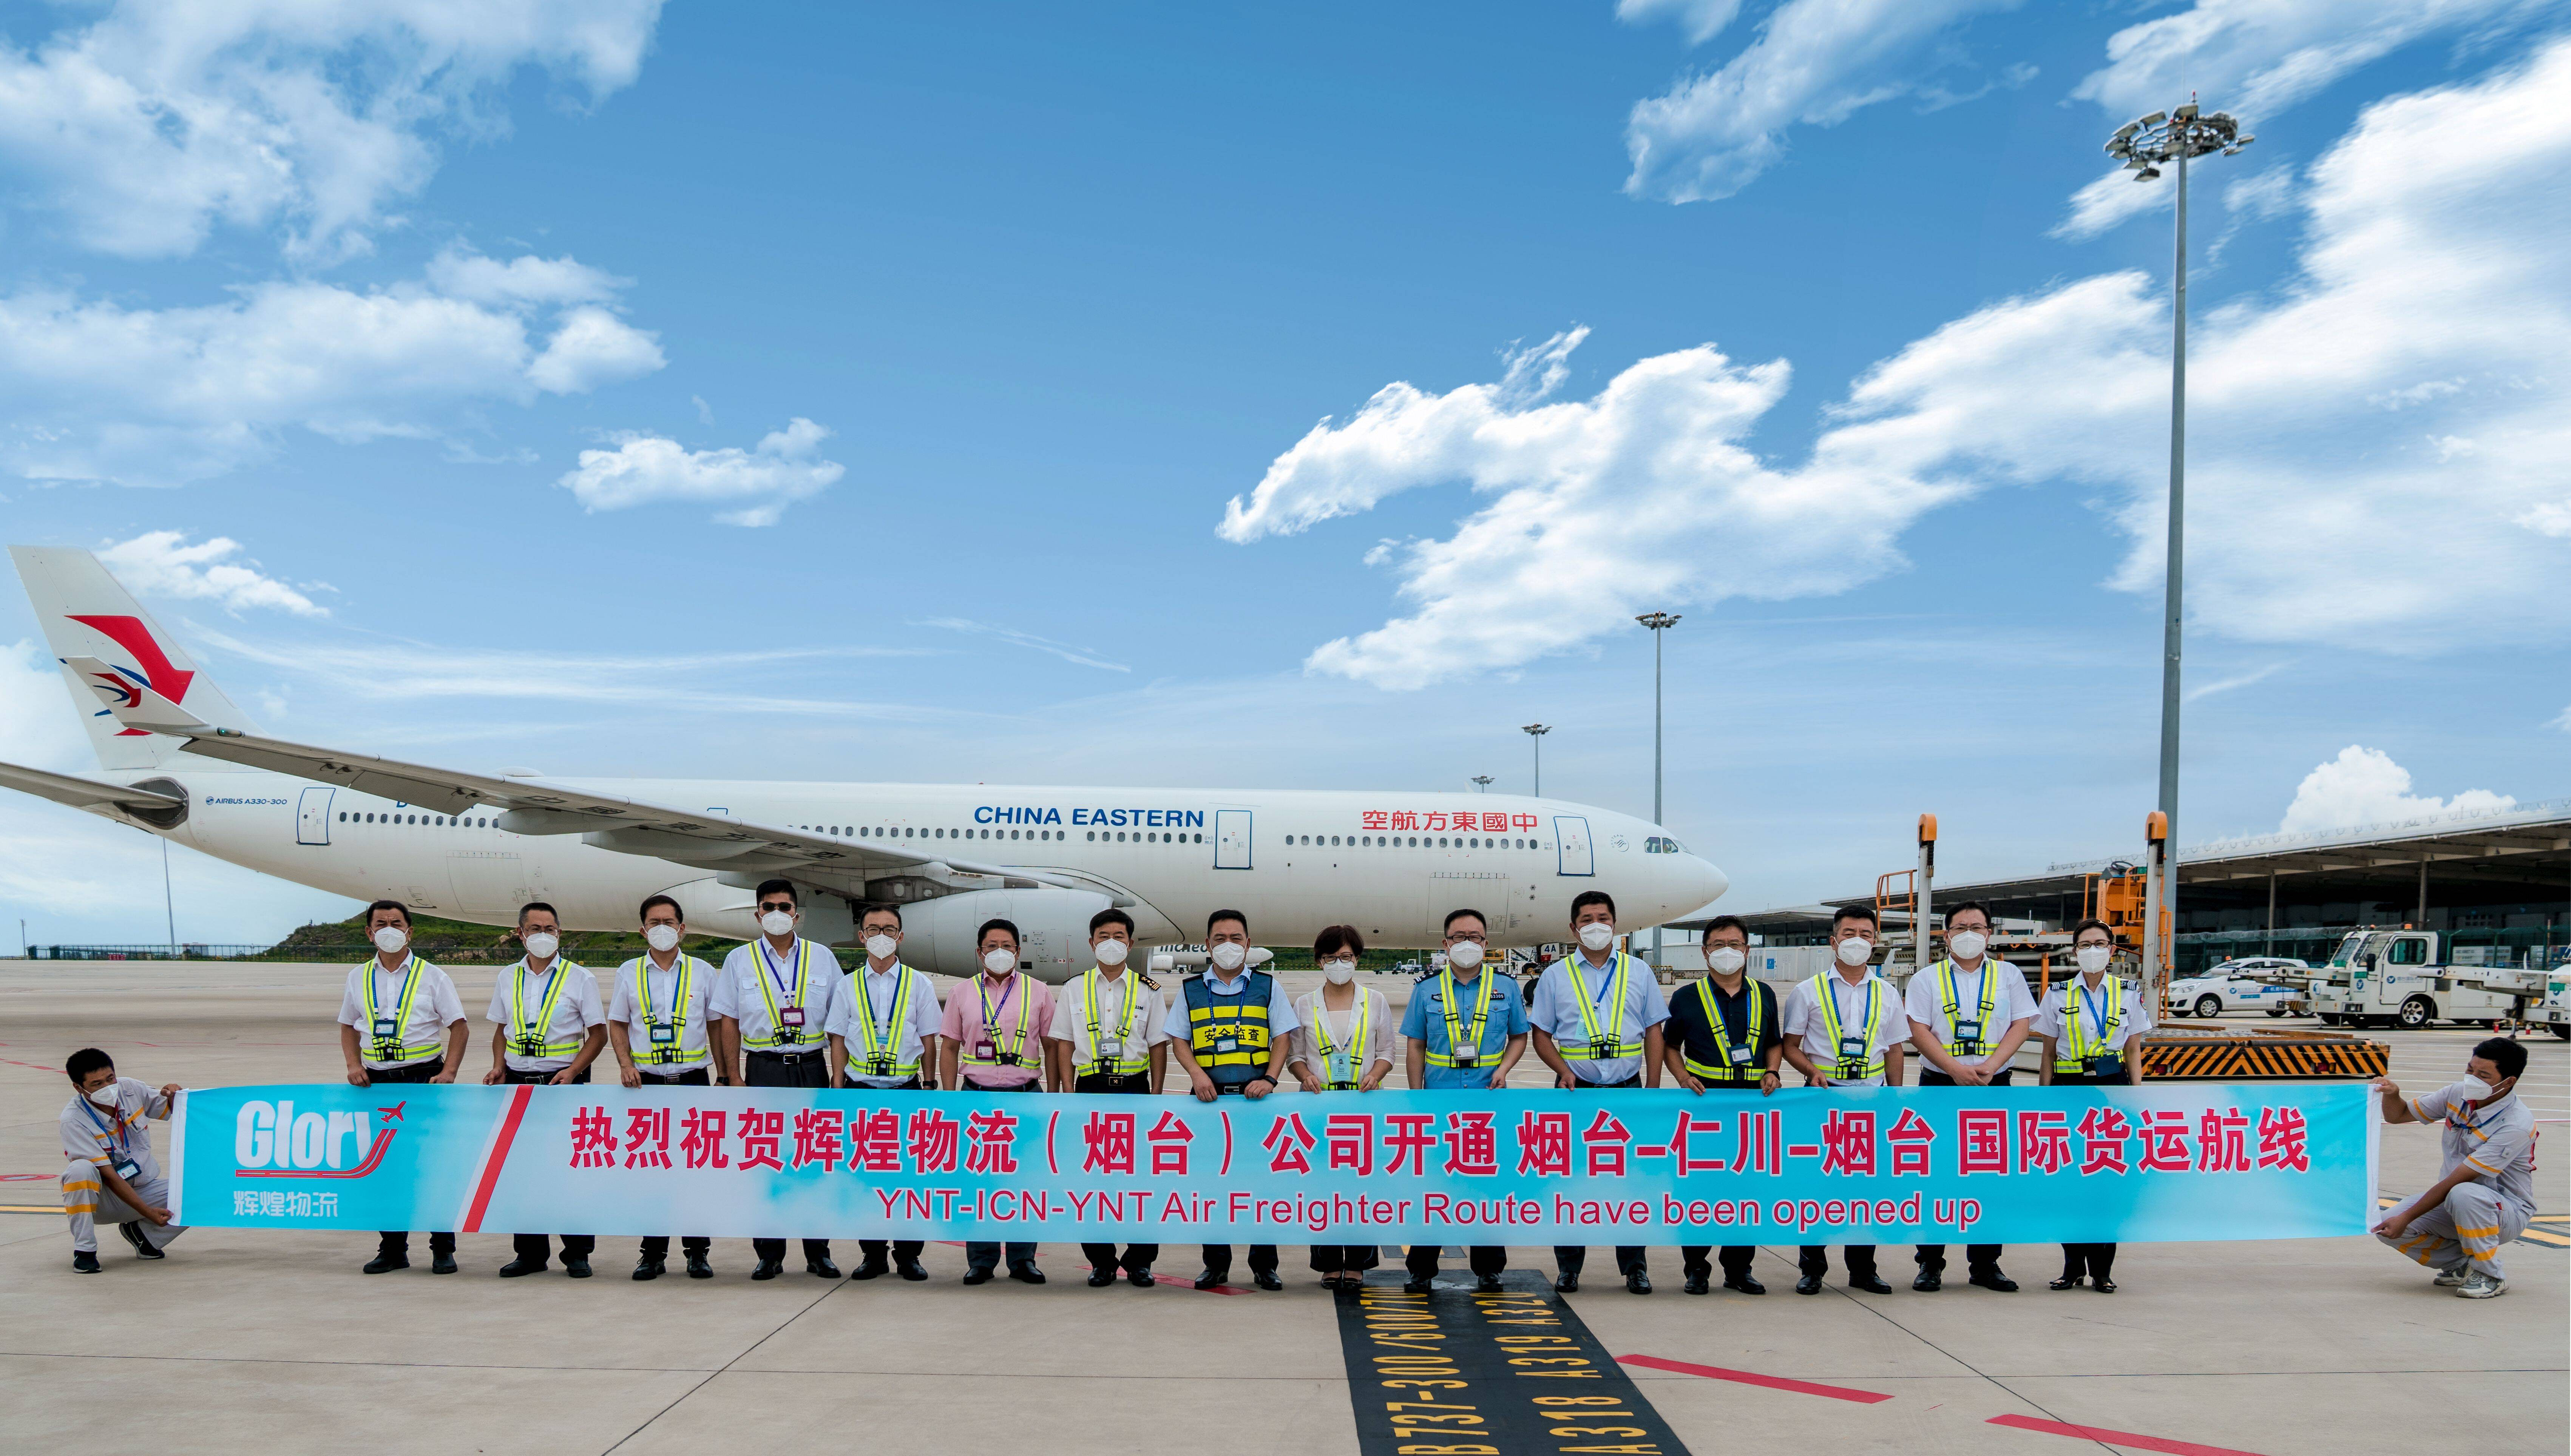 烟台国际机场新开烟台-仁川货班 恢复烟台-米兰货运航线